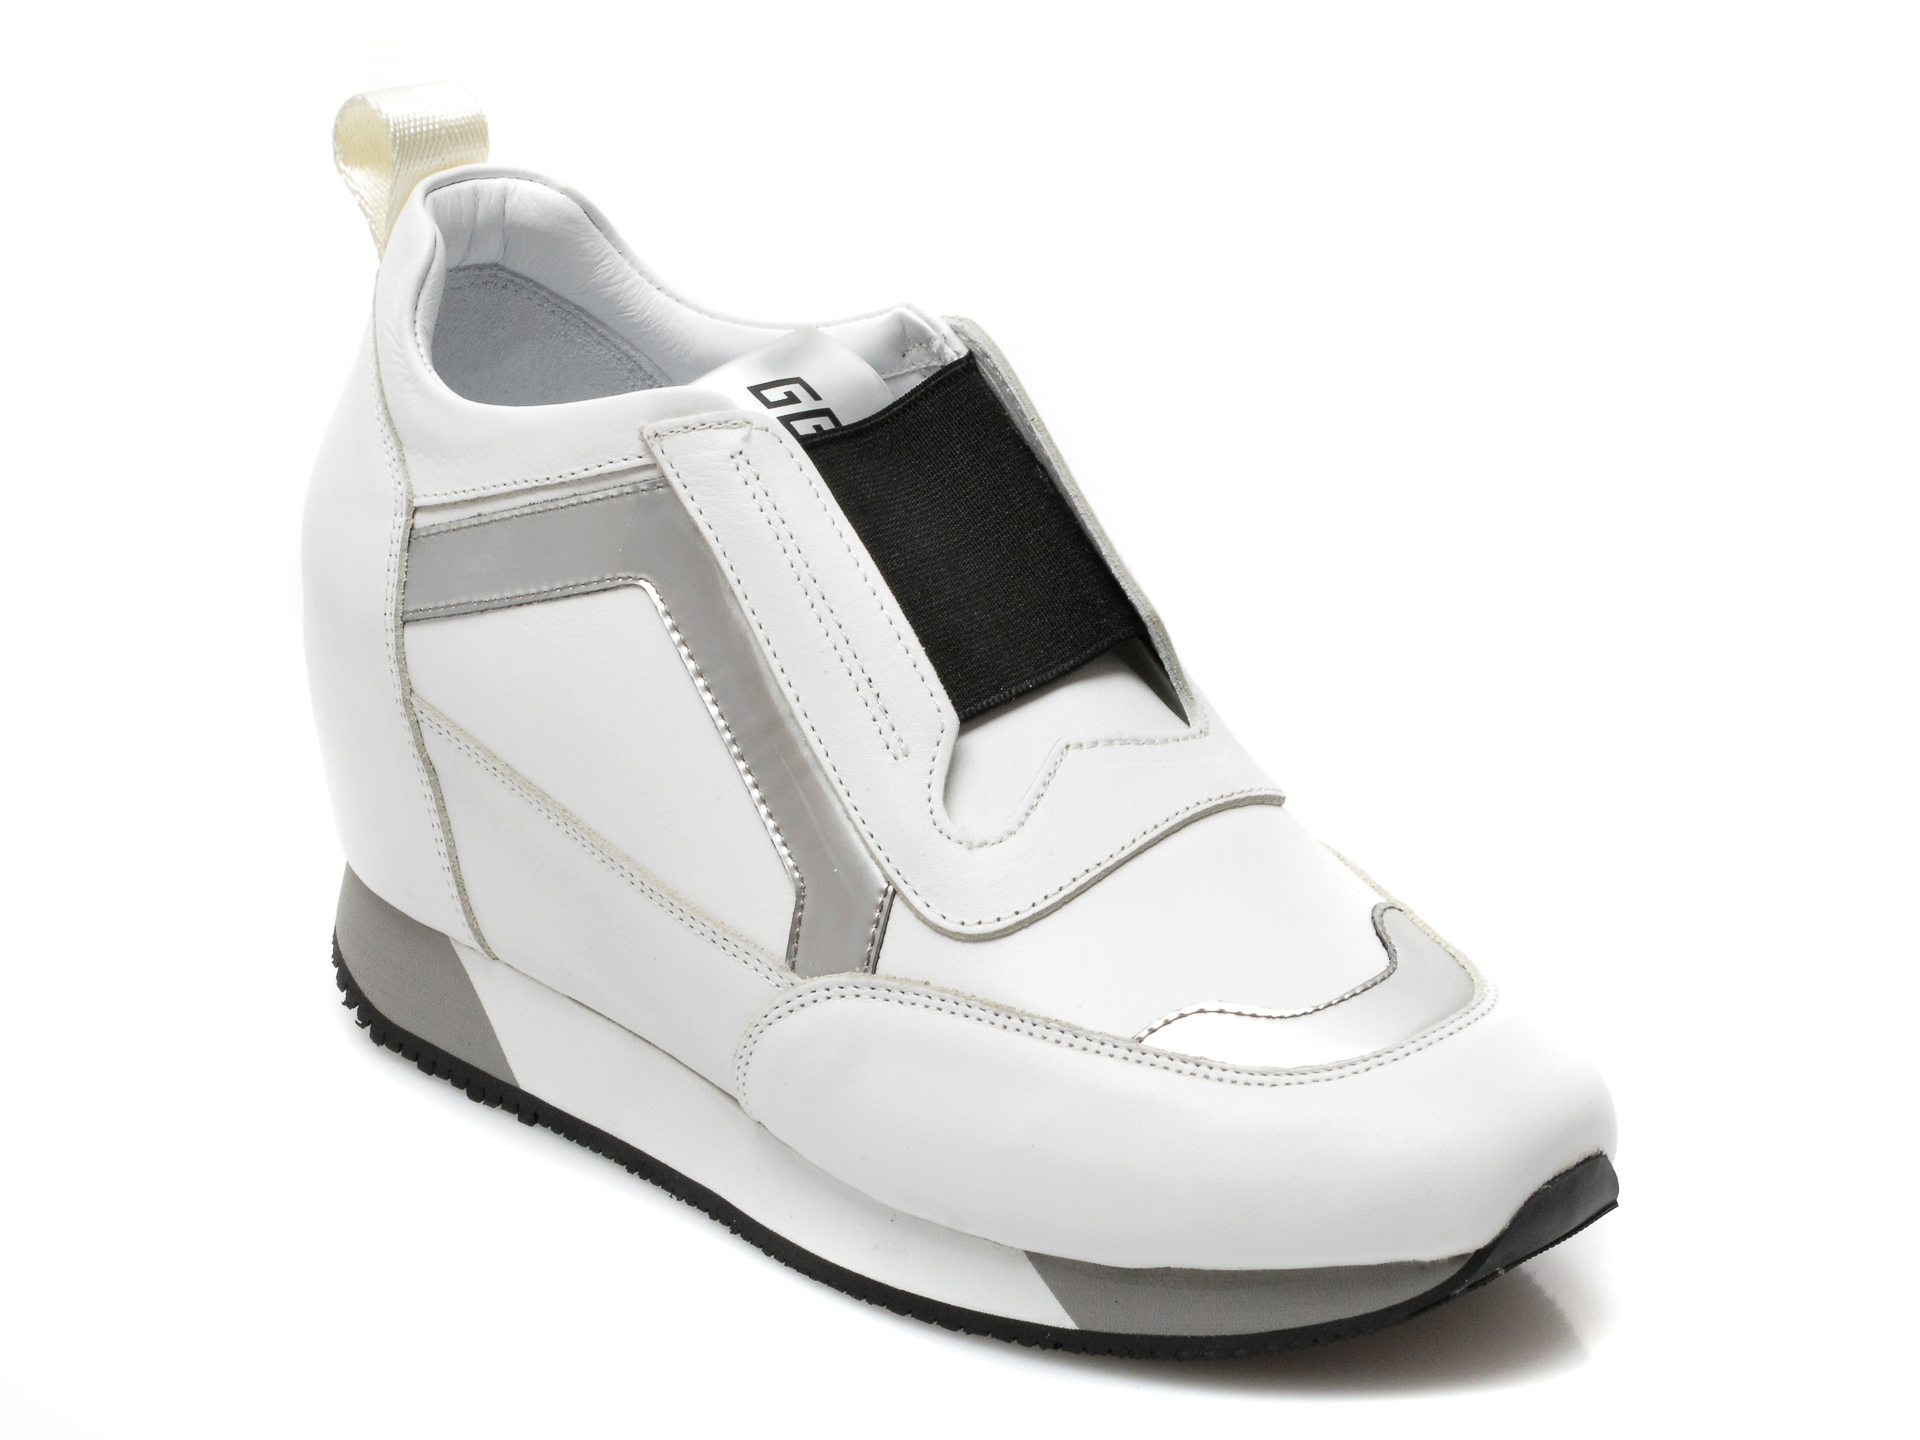 Pantofi MARIO MUZI albi, 241, din piele naturala MARIO MUZI MARIO MUZI